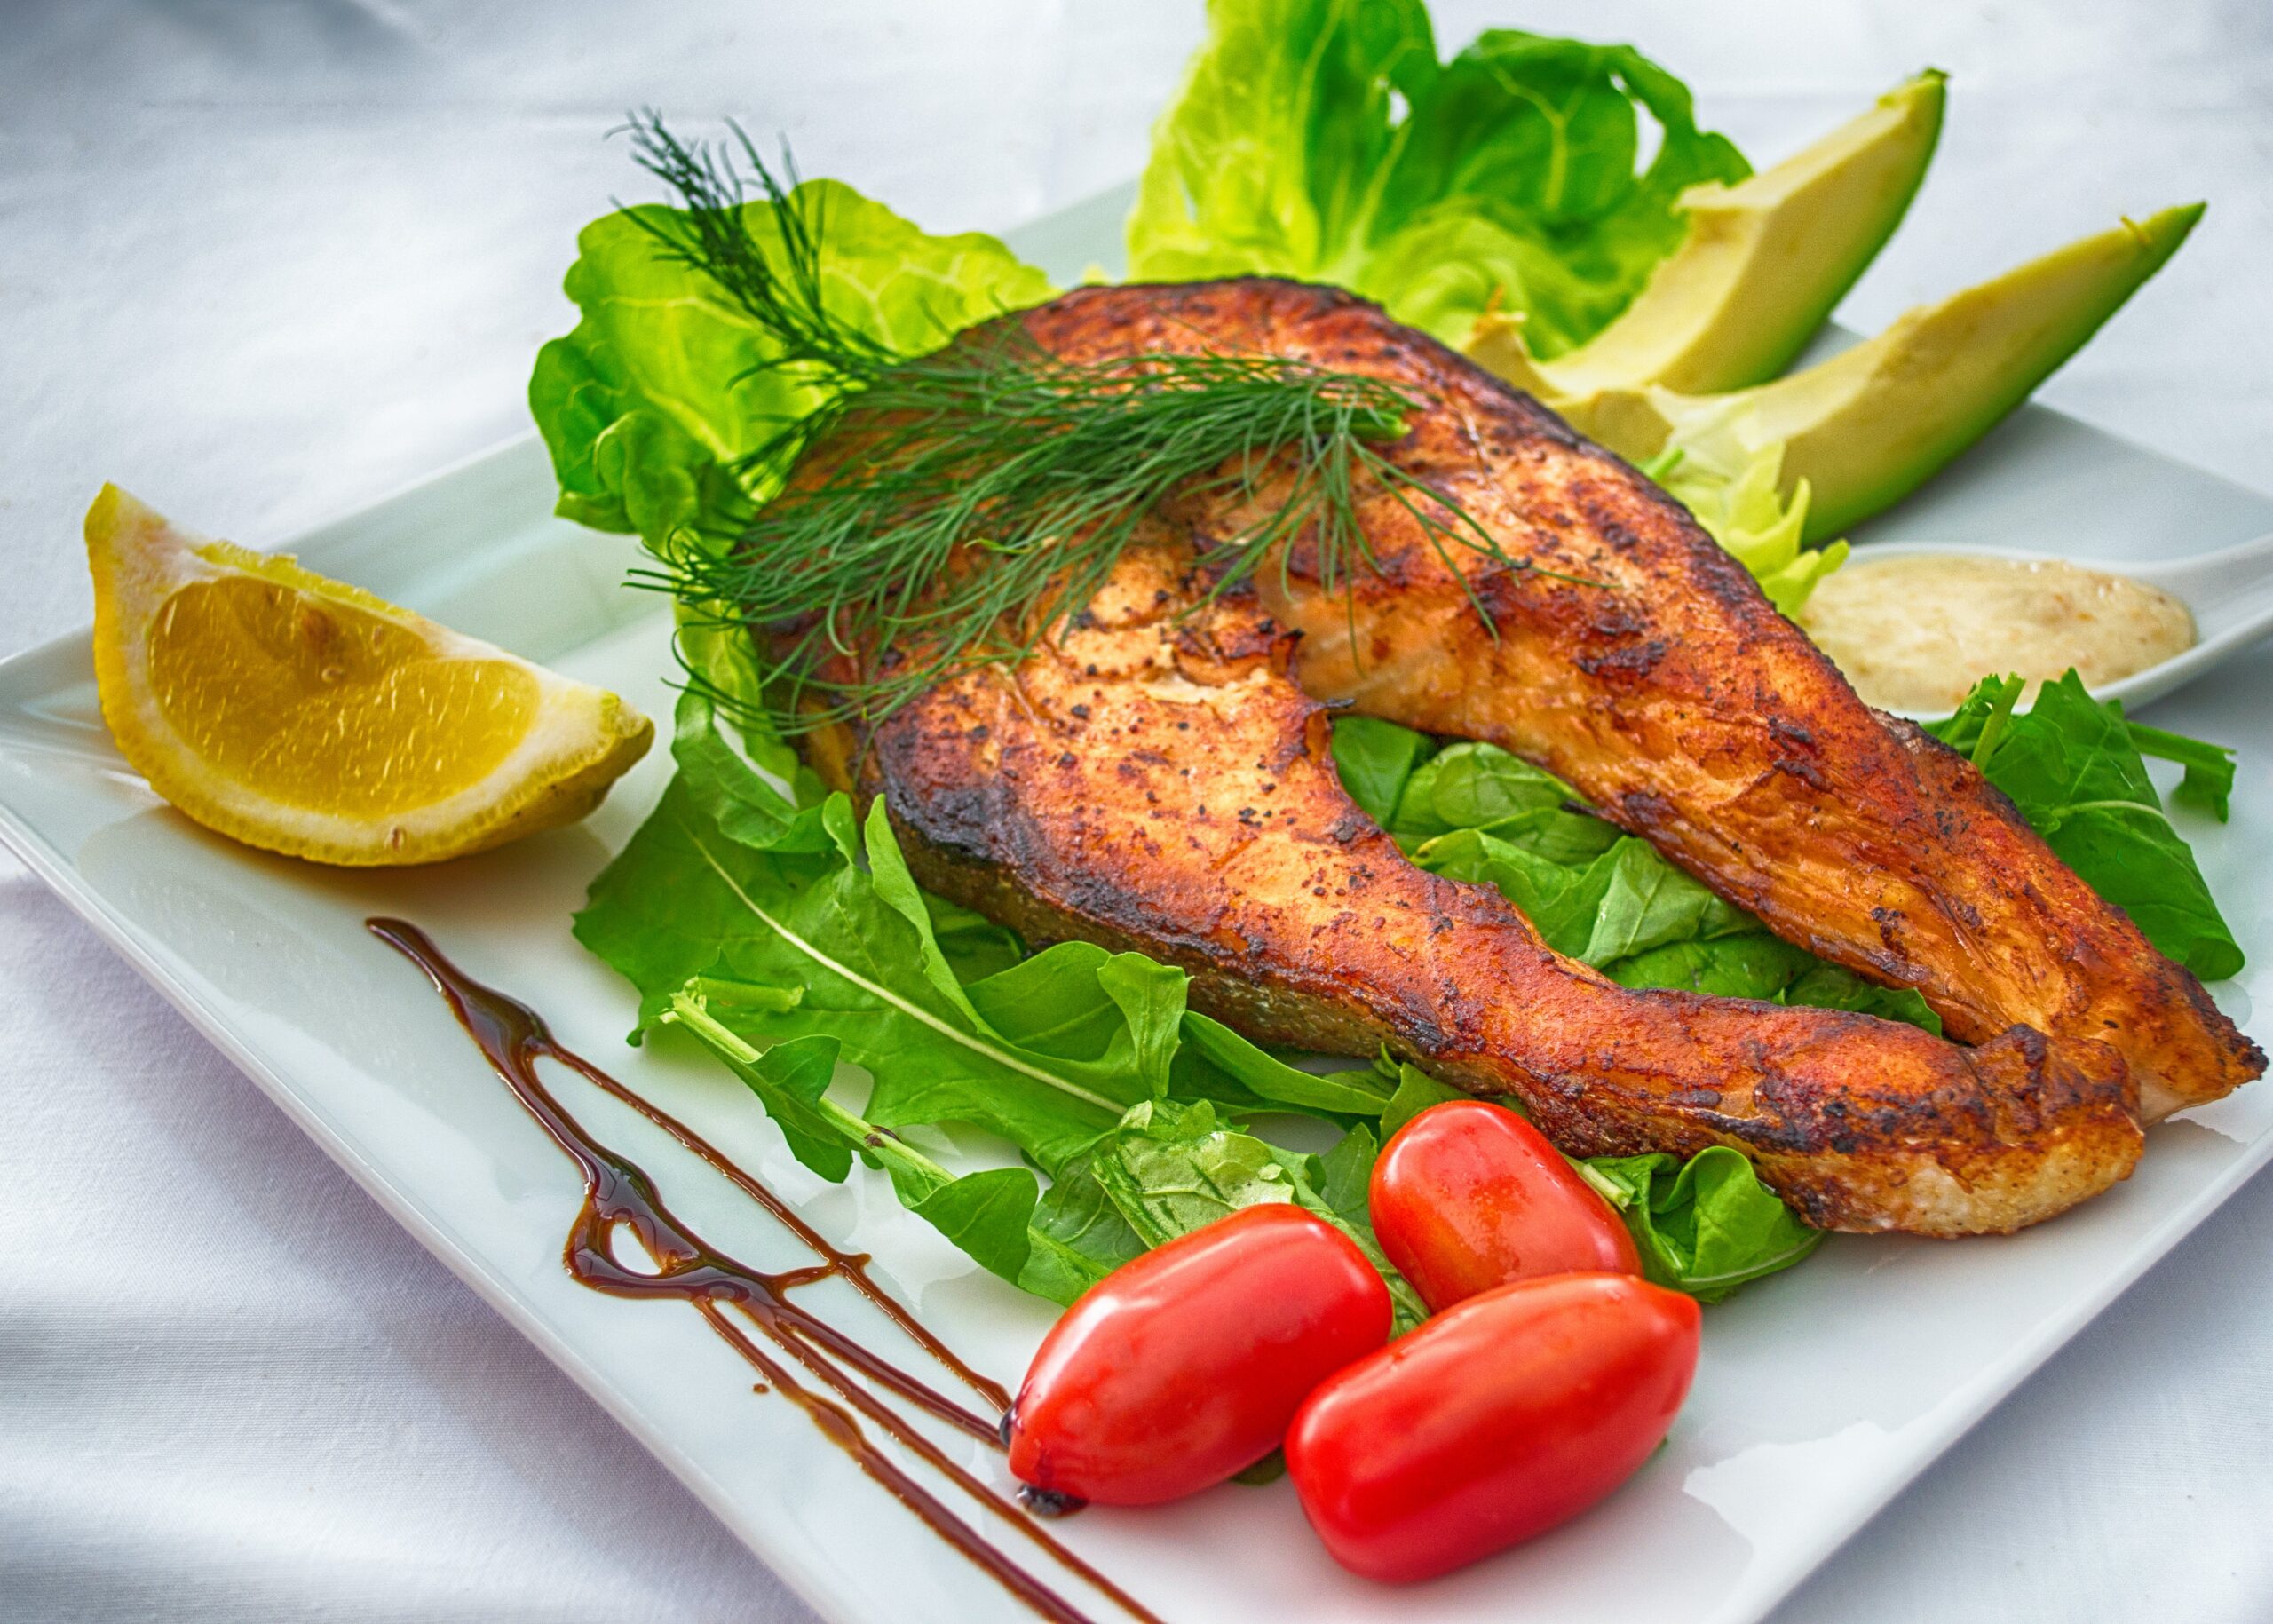 Các loại cá béo như cá hồi, cá ngừ, cá thu là nguồn cung cấp axit béo omega-3 tuyệt vời, là chất dinh dưỡng chống viêm mạnh mẽ.(Nguồn: Internet)